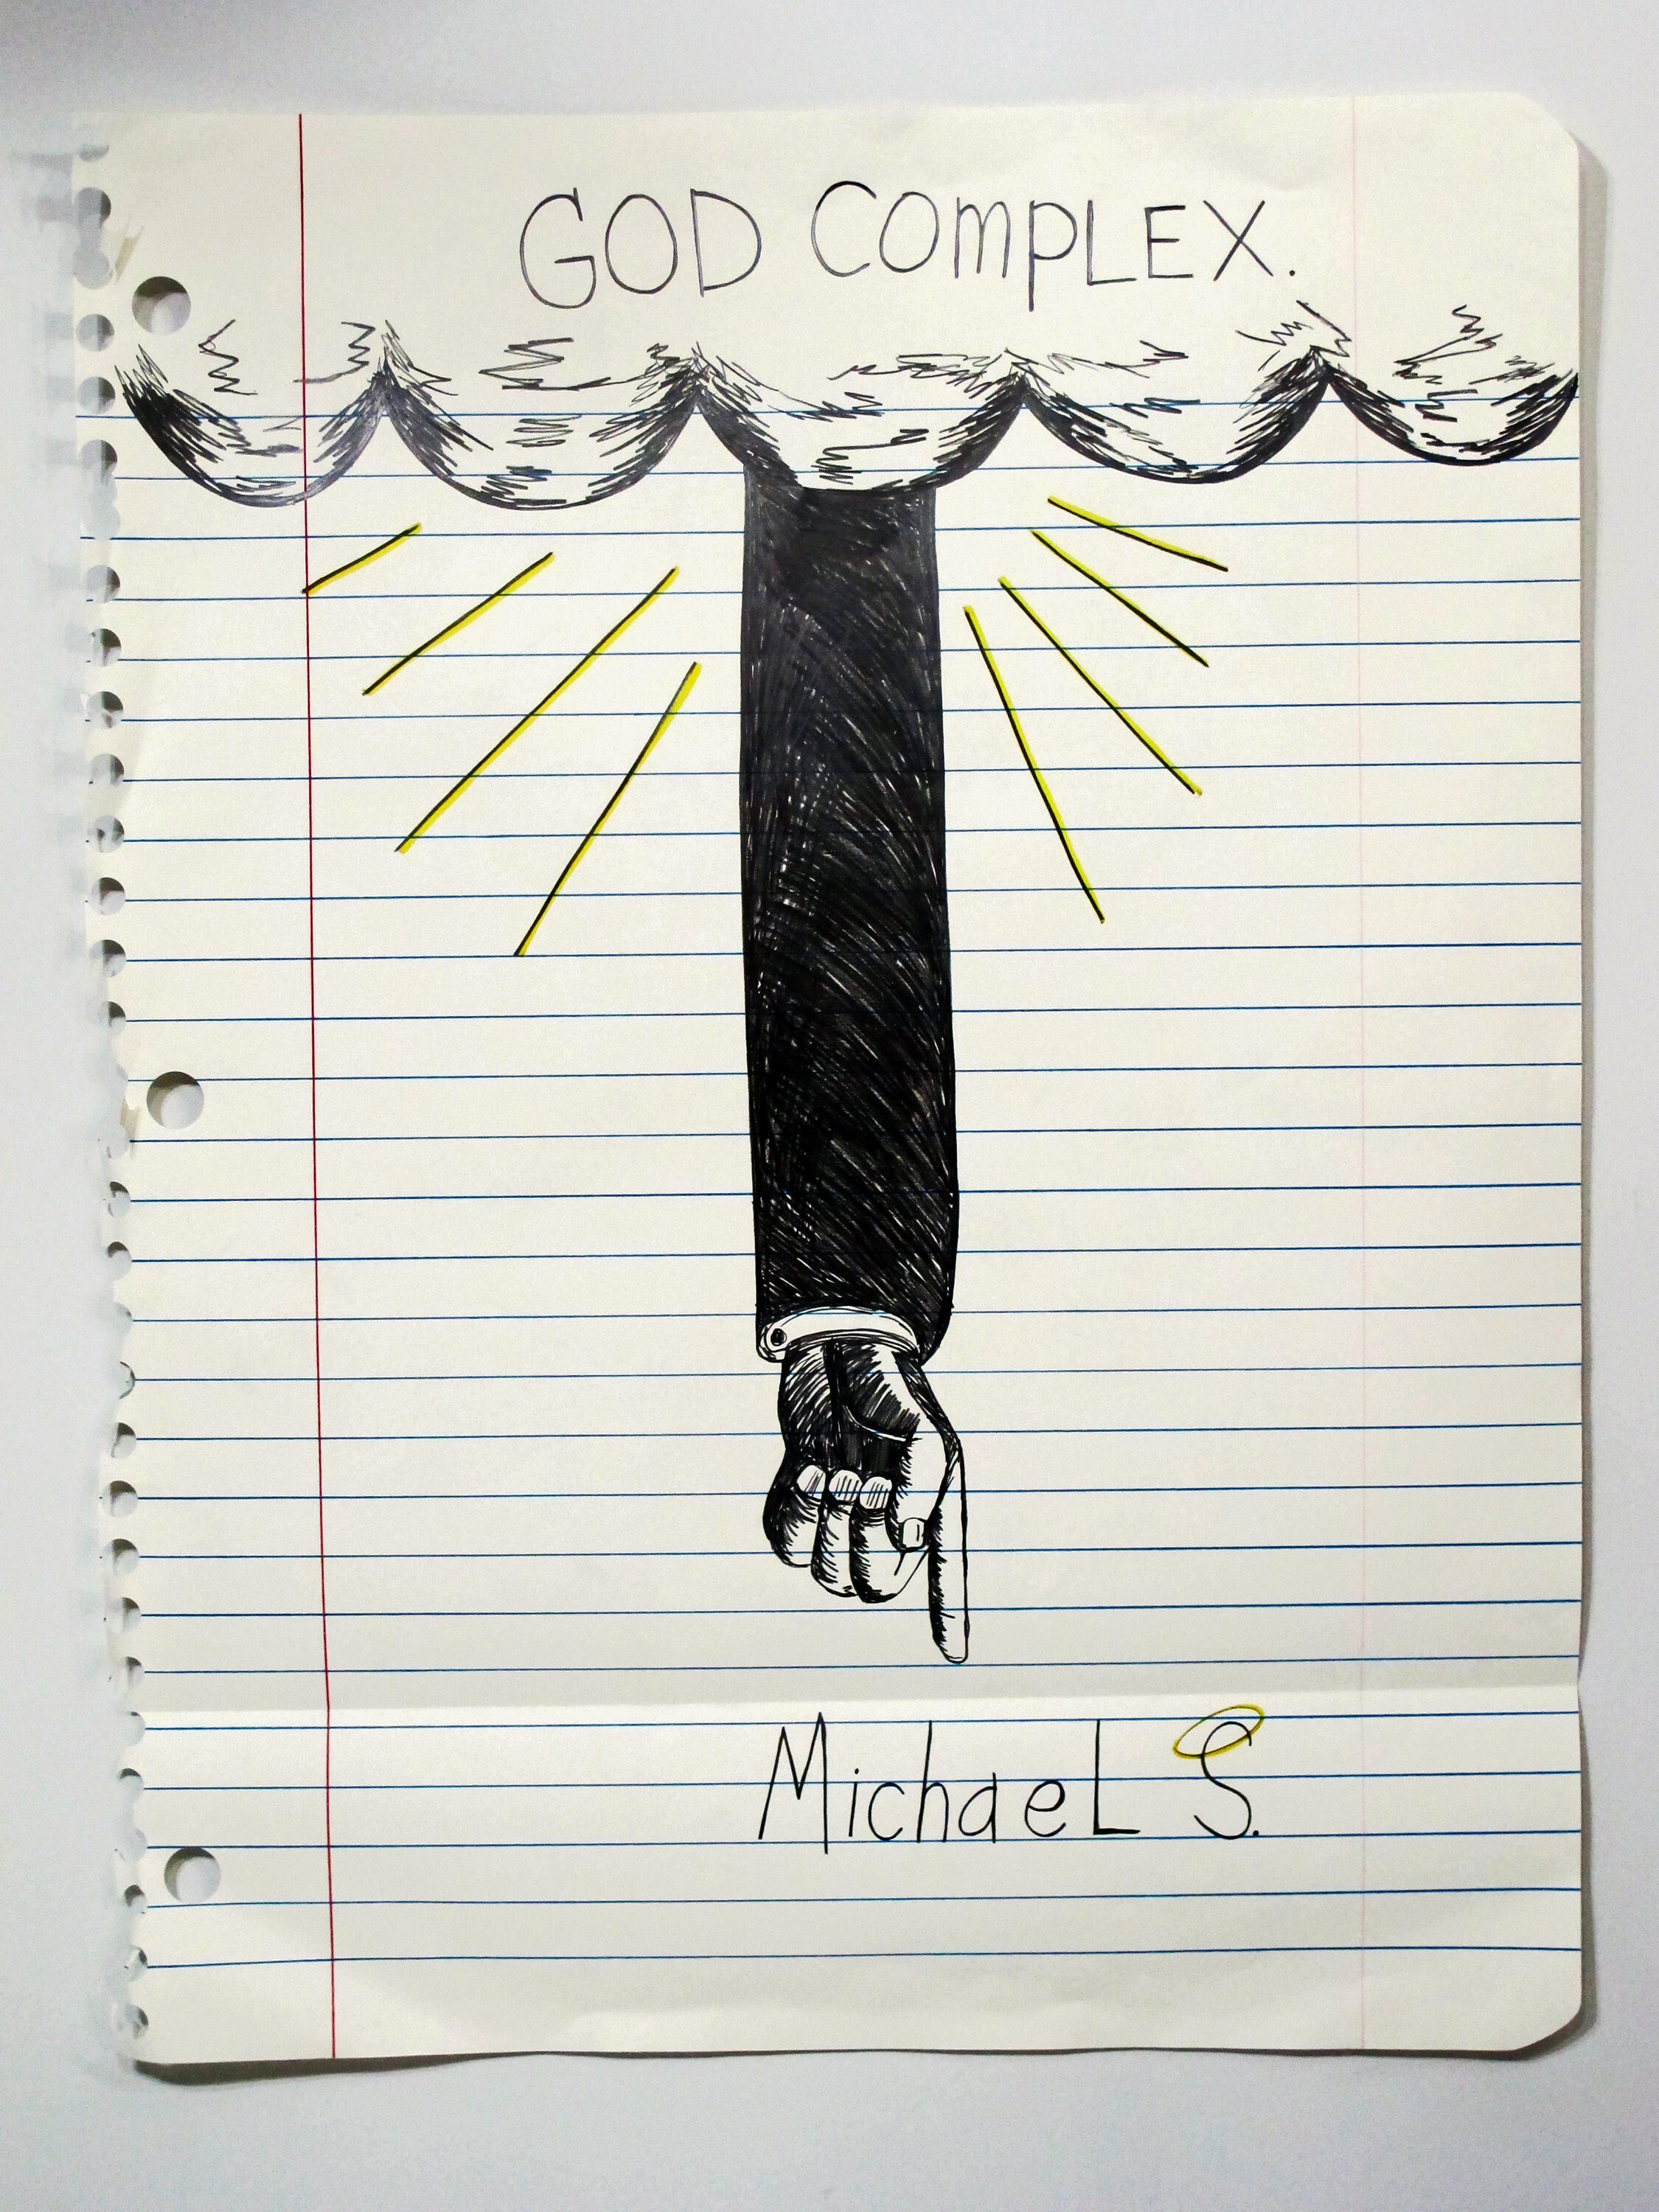  Michael Scoggins,  God Complex , 2014. Graphite, marker, colored pencil on paper , 67 x 51 in.  22,000.00 usd 